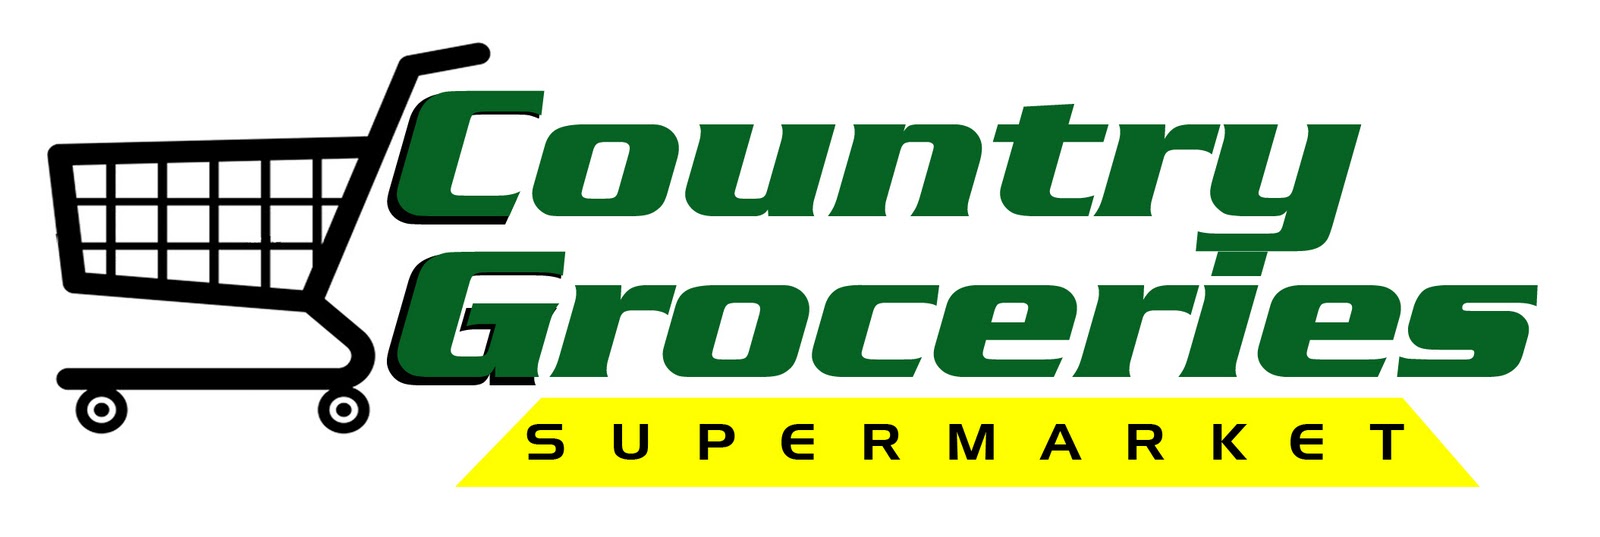 Трейдмаркет. Супермаркет лого. Market логотип. Логотип продуктового магазина. Логотипы продуктовых торговых сетей.